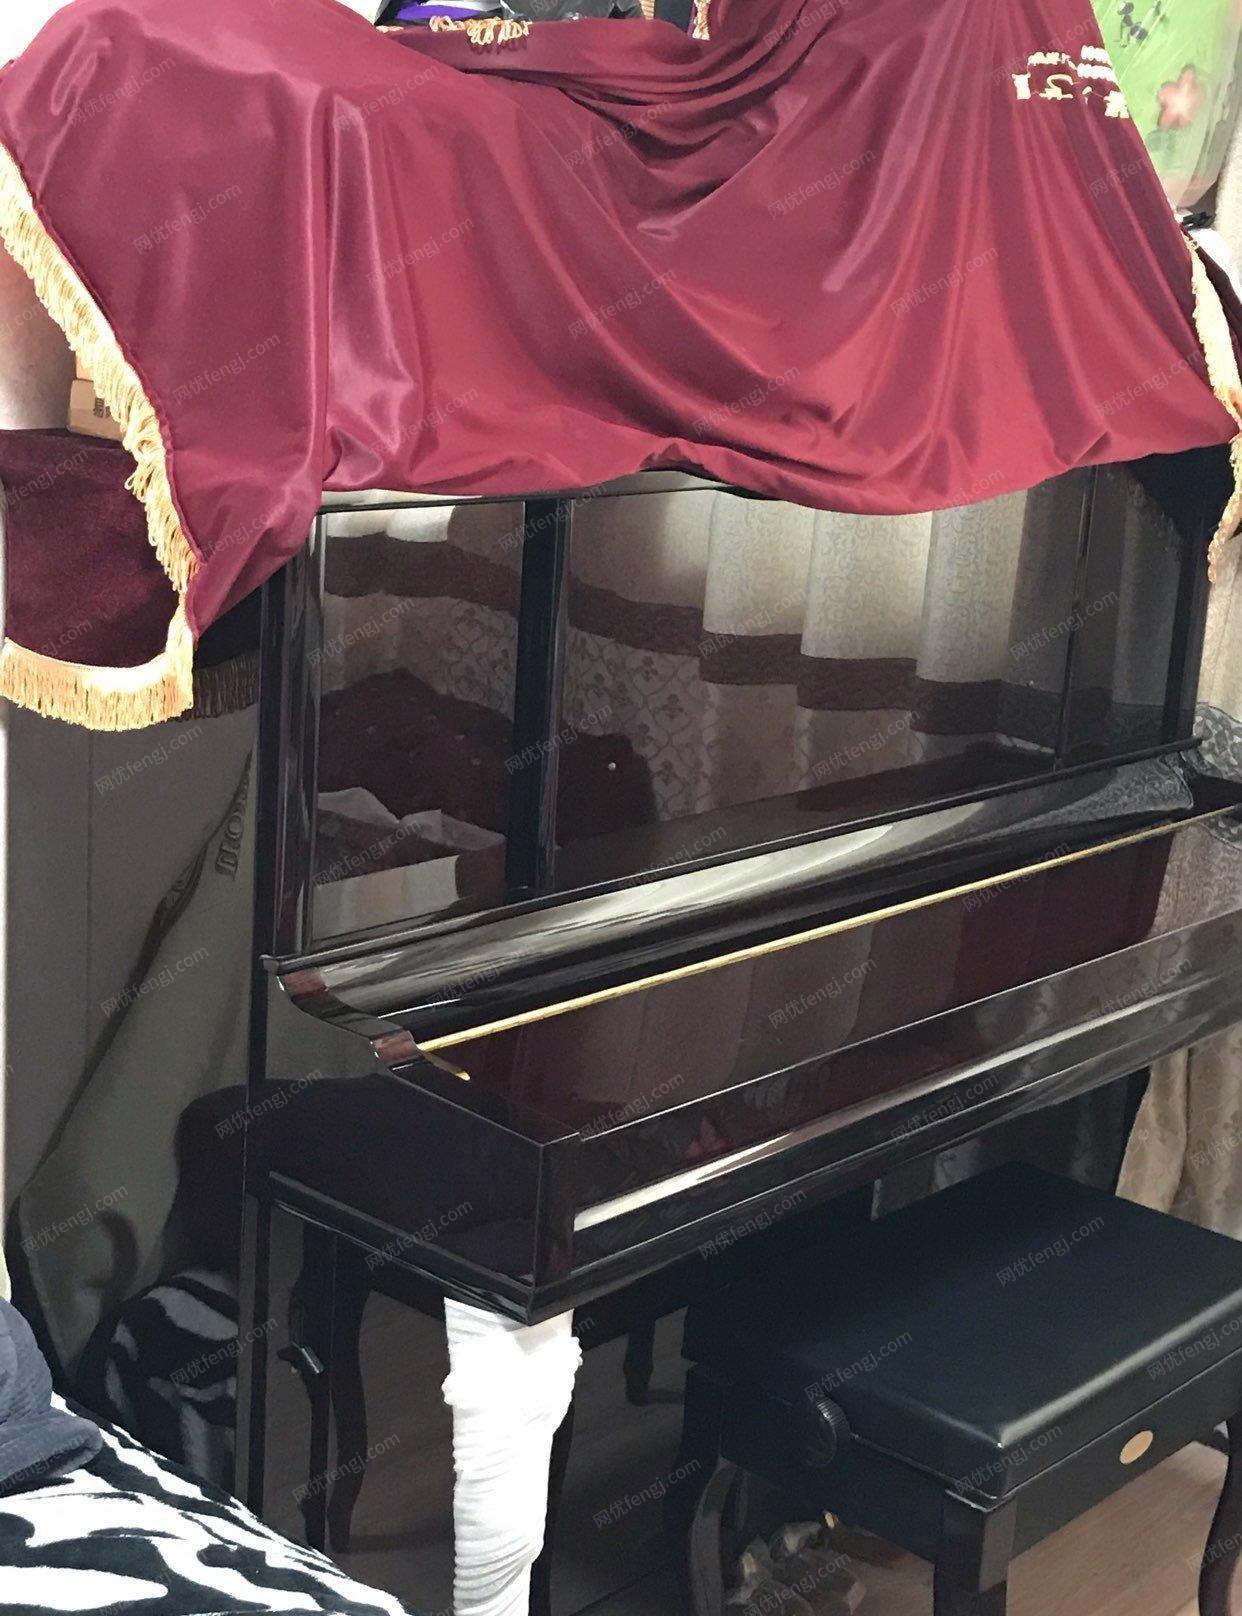 河南焦作出售鲍德温钢琴。没有磕碰划痕